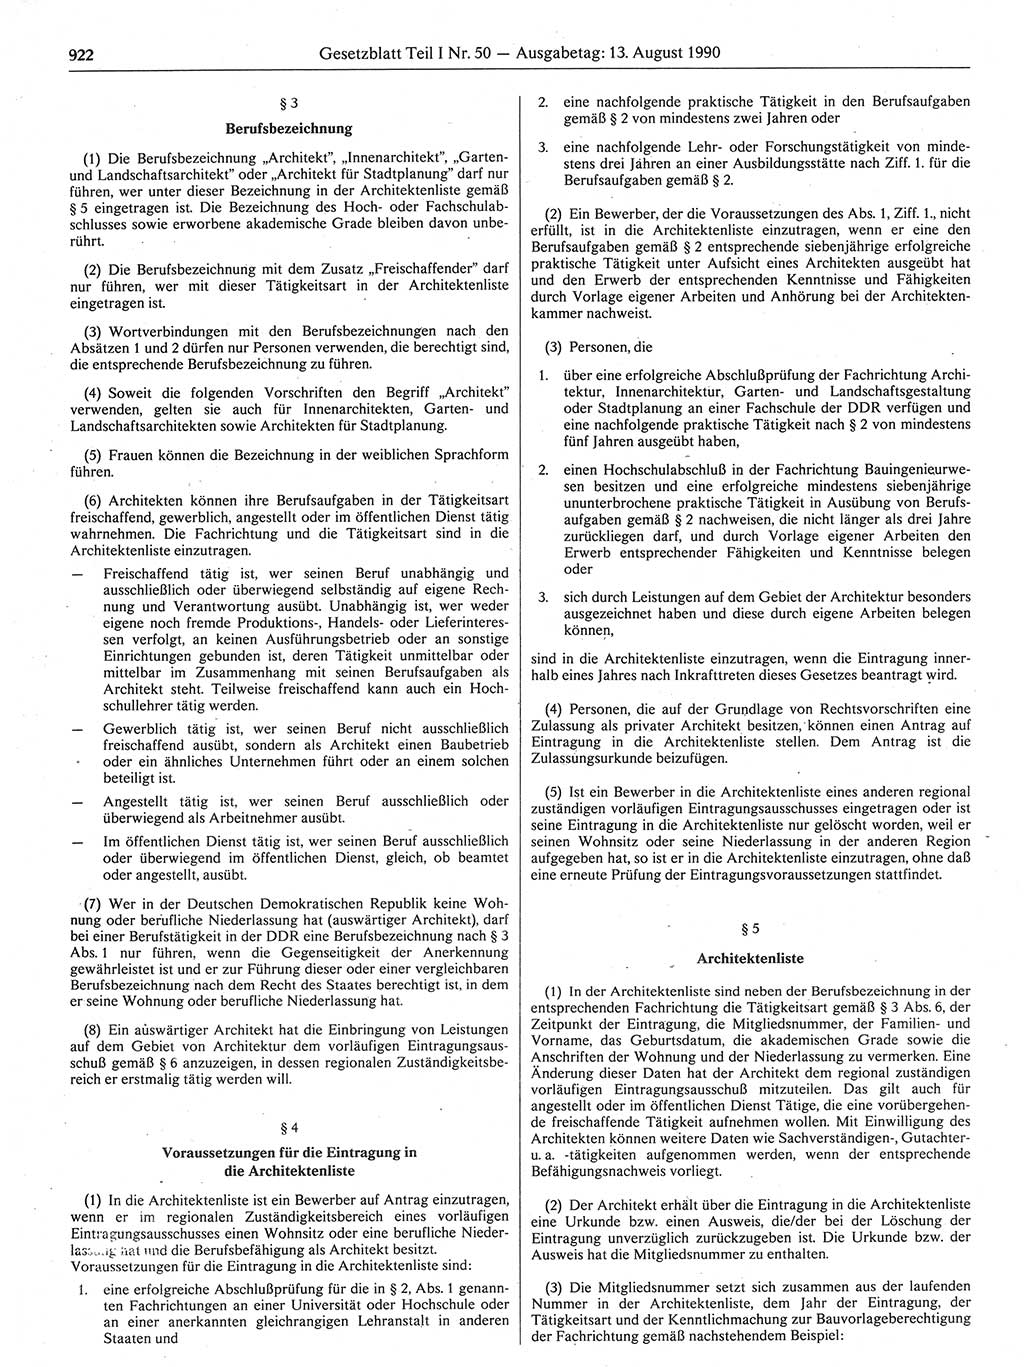 Gesetzblatt (GBl.) der Deutschen Demokratischen Republik (DDR) Teil Ⅰ 1990, Seite 922 (GBl. DDR Ⅰ 1990, S. 922)